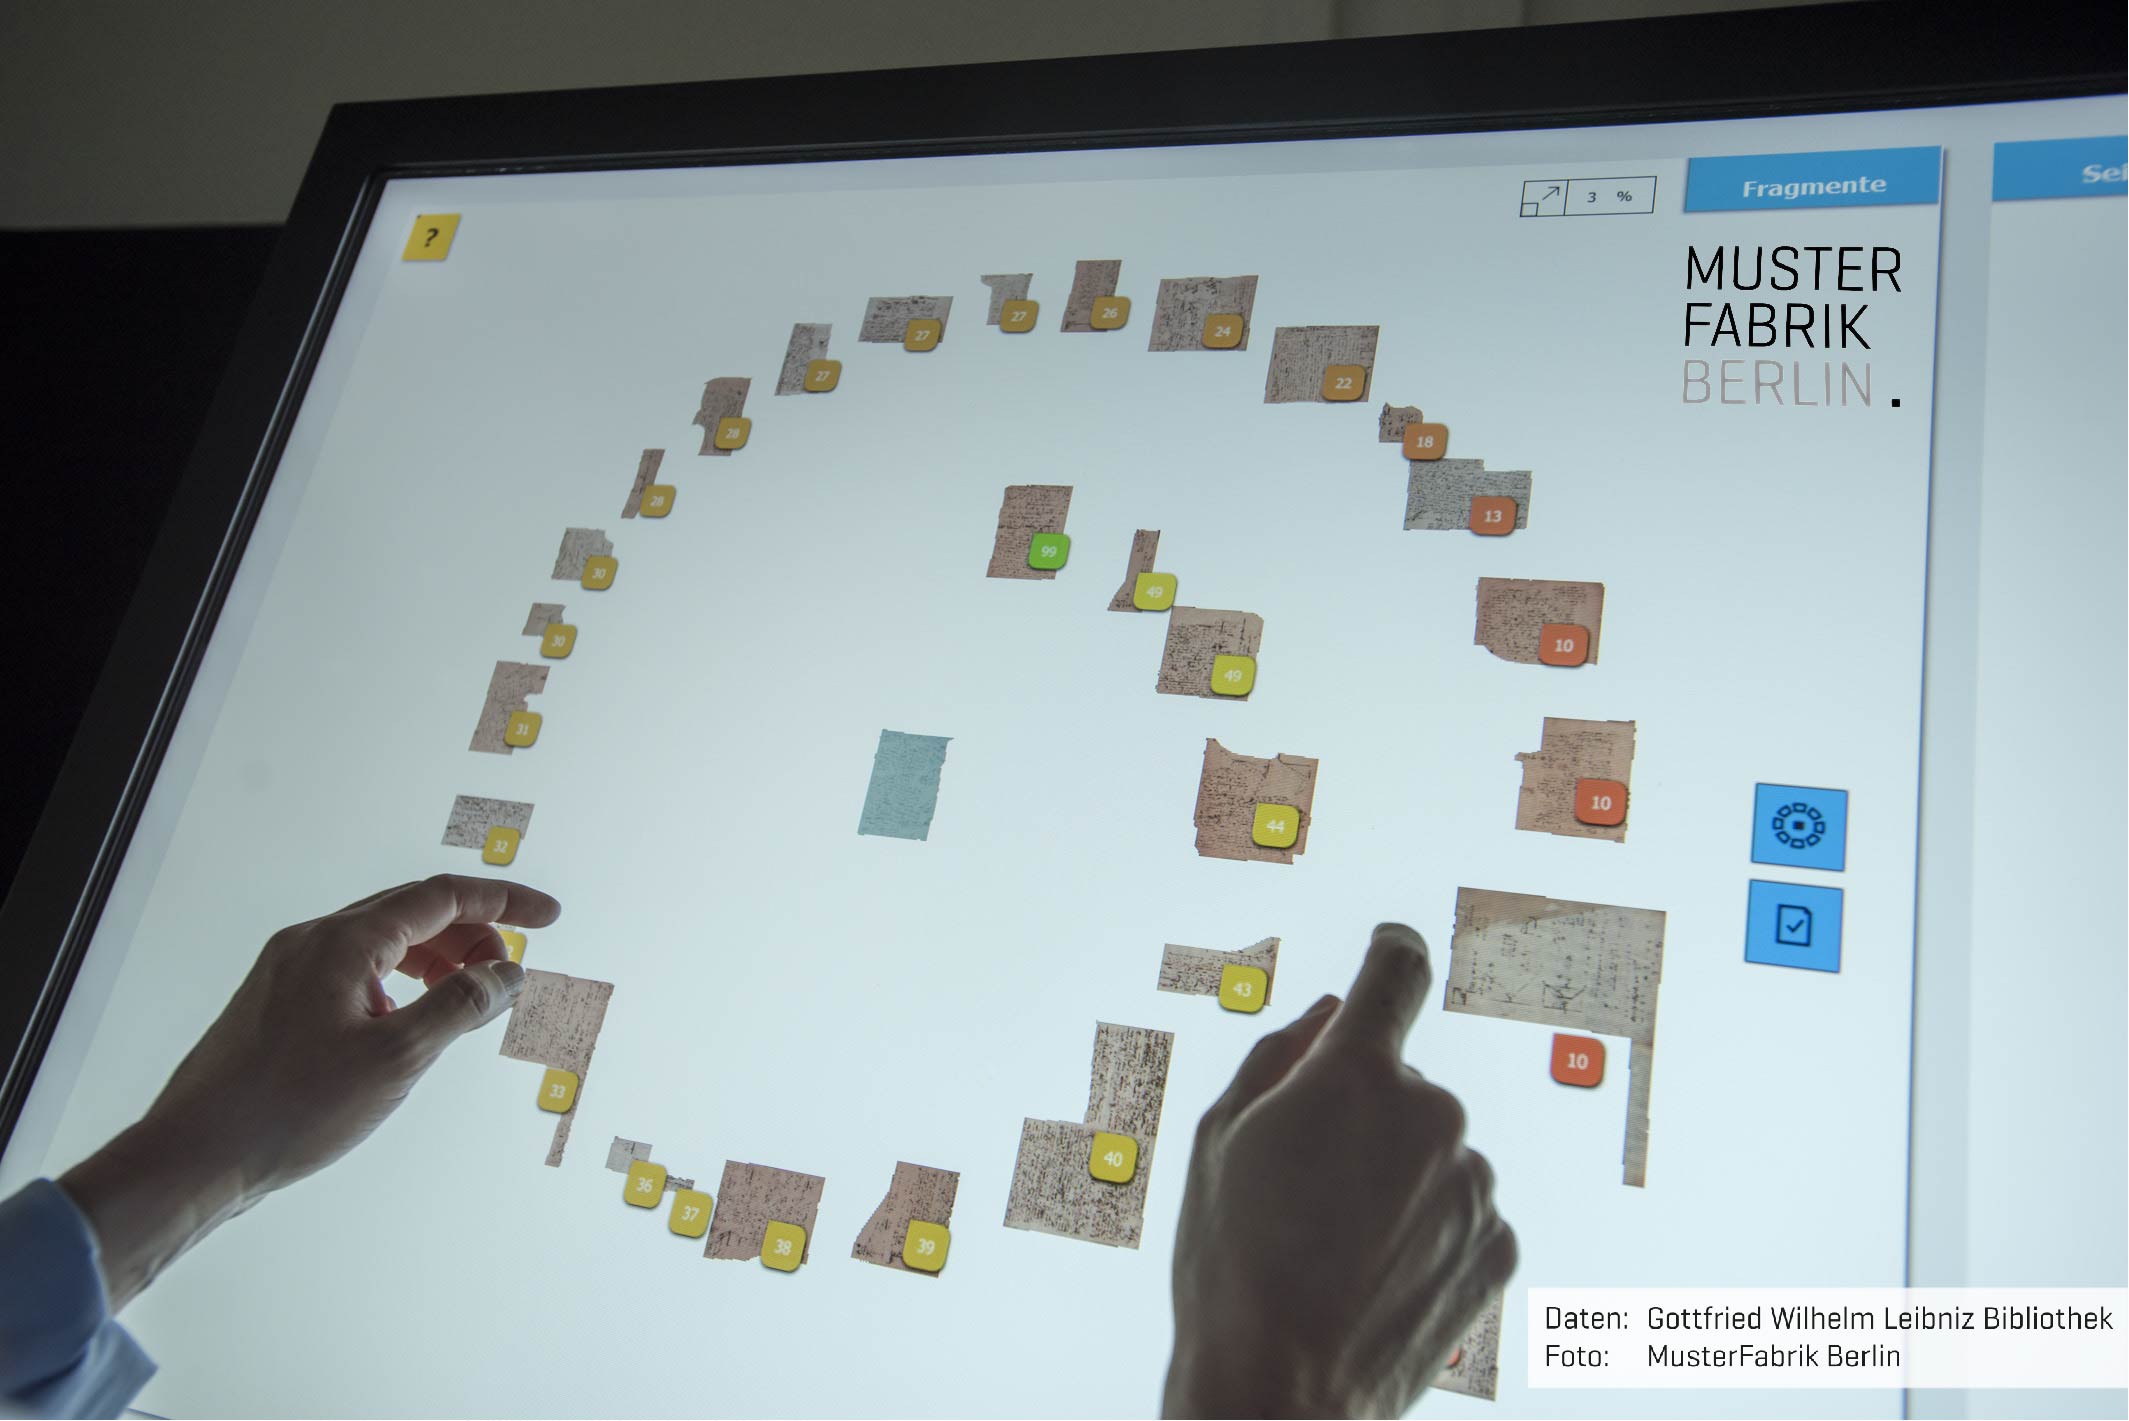 Interaktives Handling von digitalisierten Objekten an einem Touchscreen, Fragmente: Gottfried Wilhelm Leibniz Bibliothek